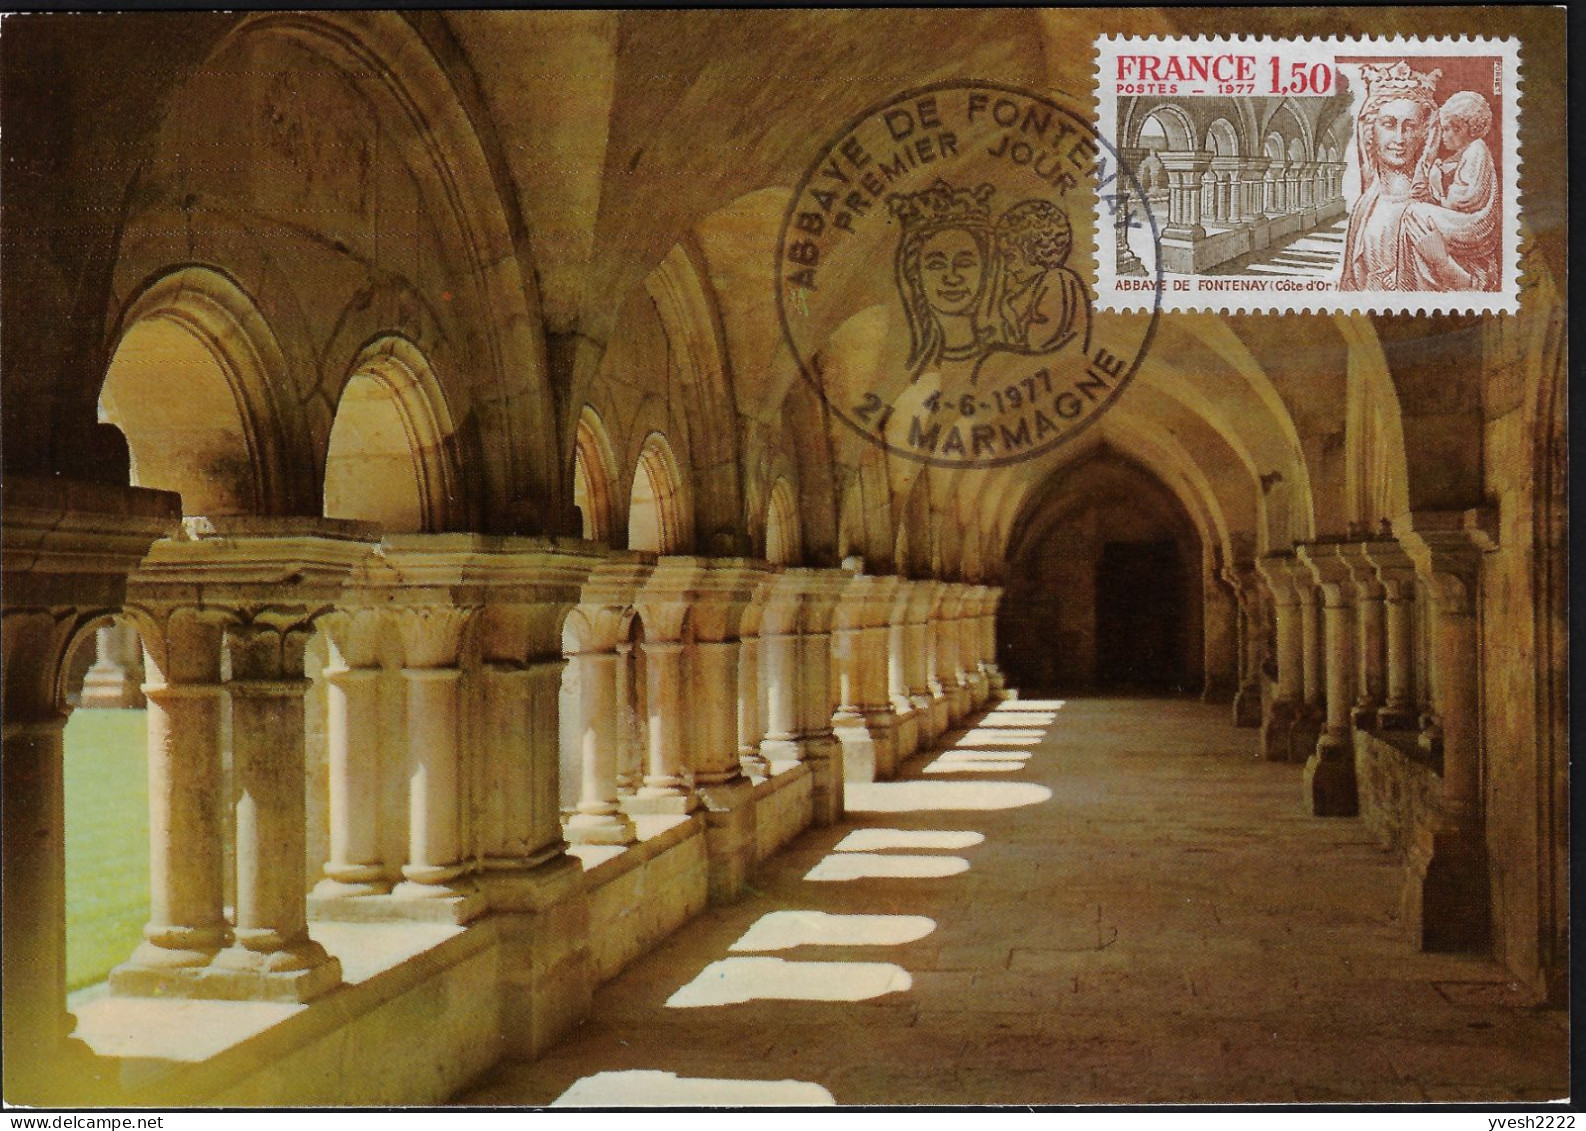 France 1977 Y&T 1938 Sur 2 Cartes Maxima. Abbaye Cistercienne De Fontenay. Cloître Et Statue De La Vierge. Marmagne - Abbeys & Monasteries